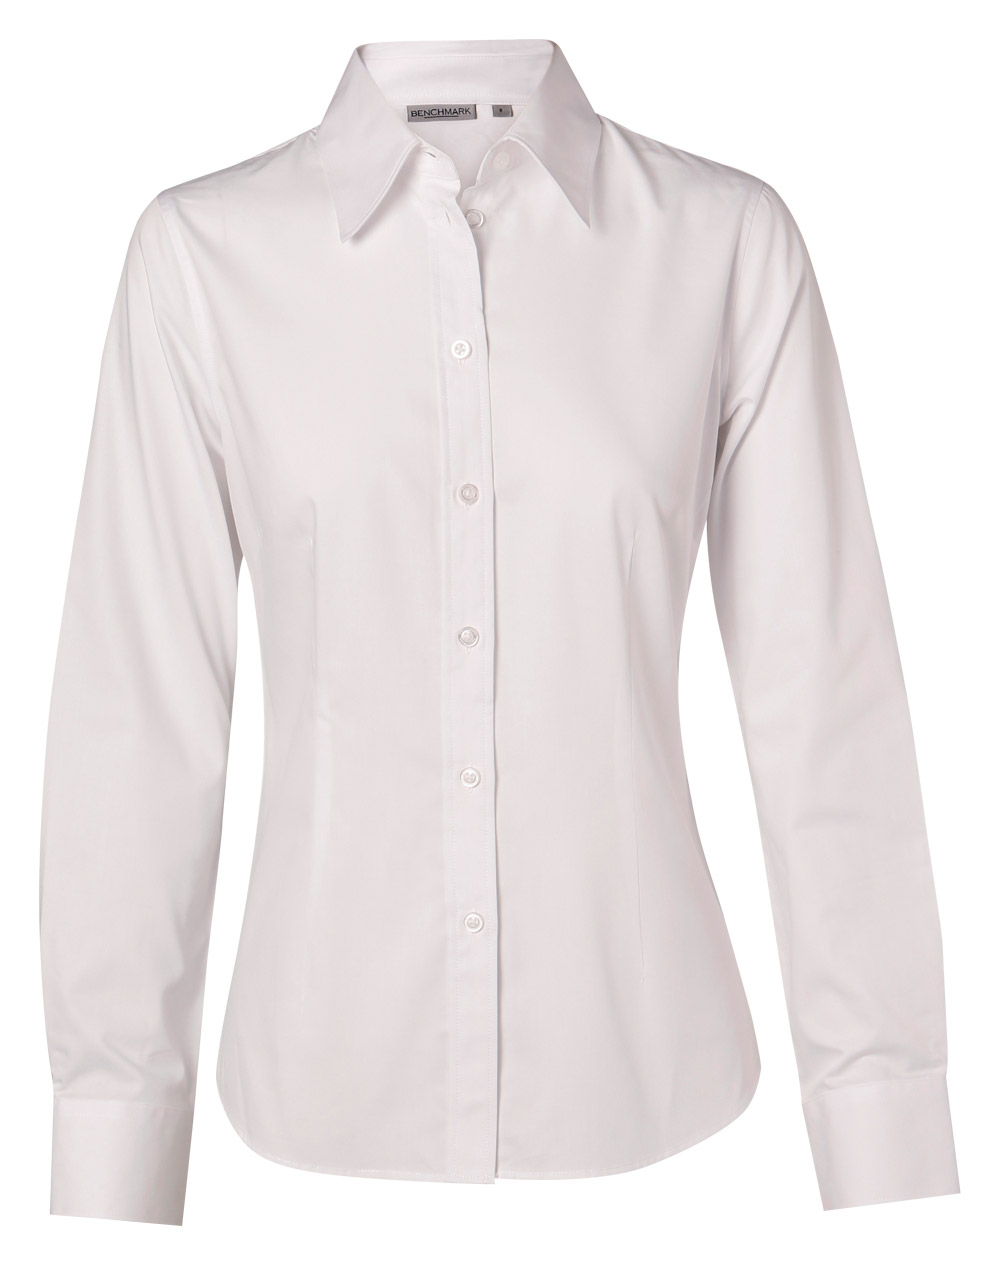 M8020L/M8020Q/M8020S Women’s Cotton/Poly Stretch Long Sleeve Shirt